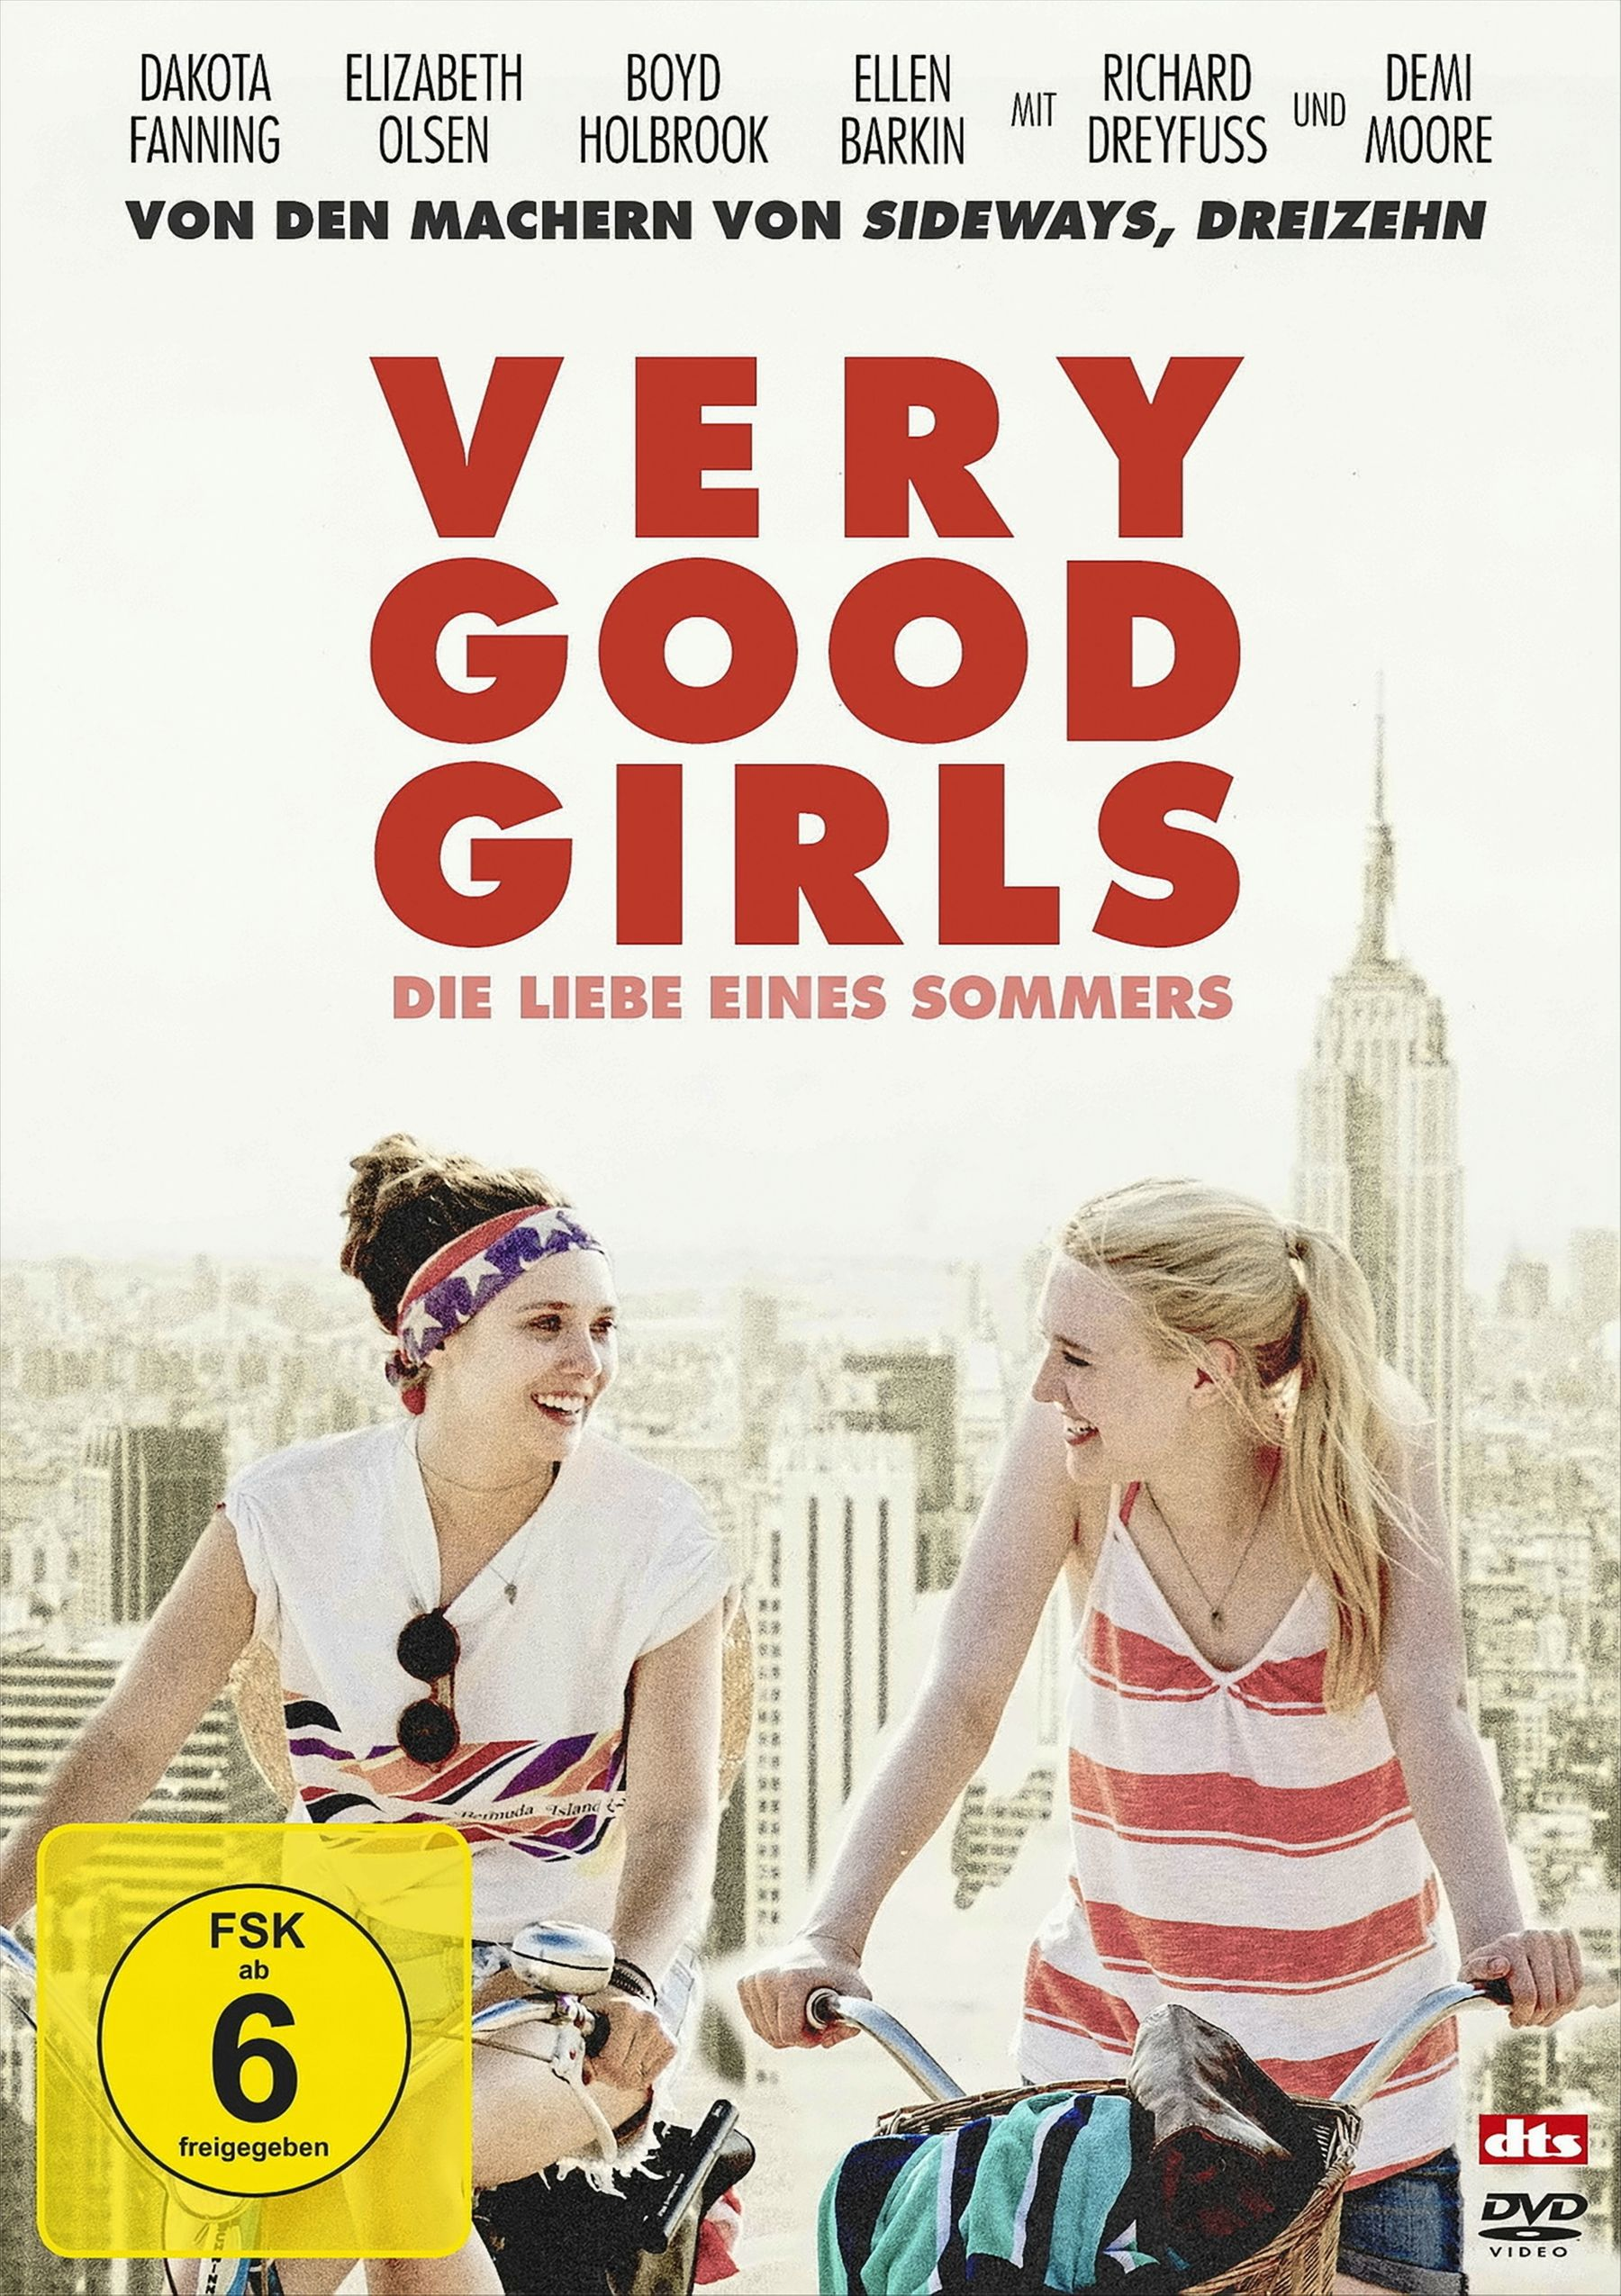 DVD - Die Liebe Good Girls Sommers Very eines